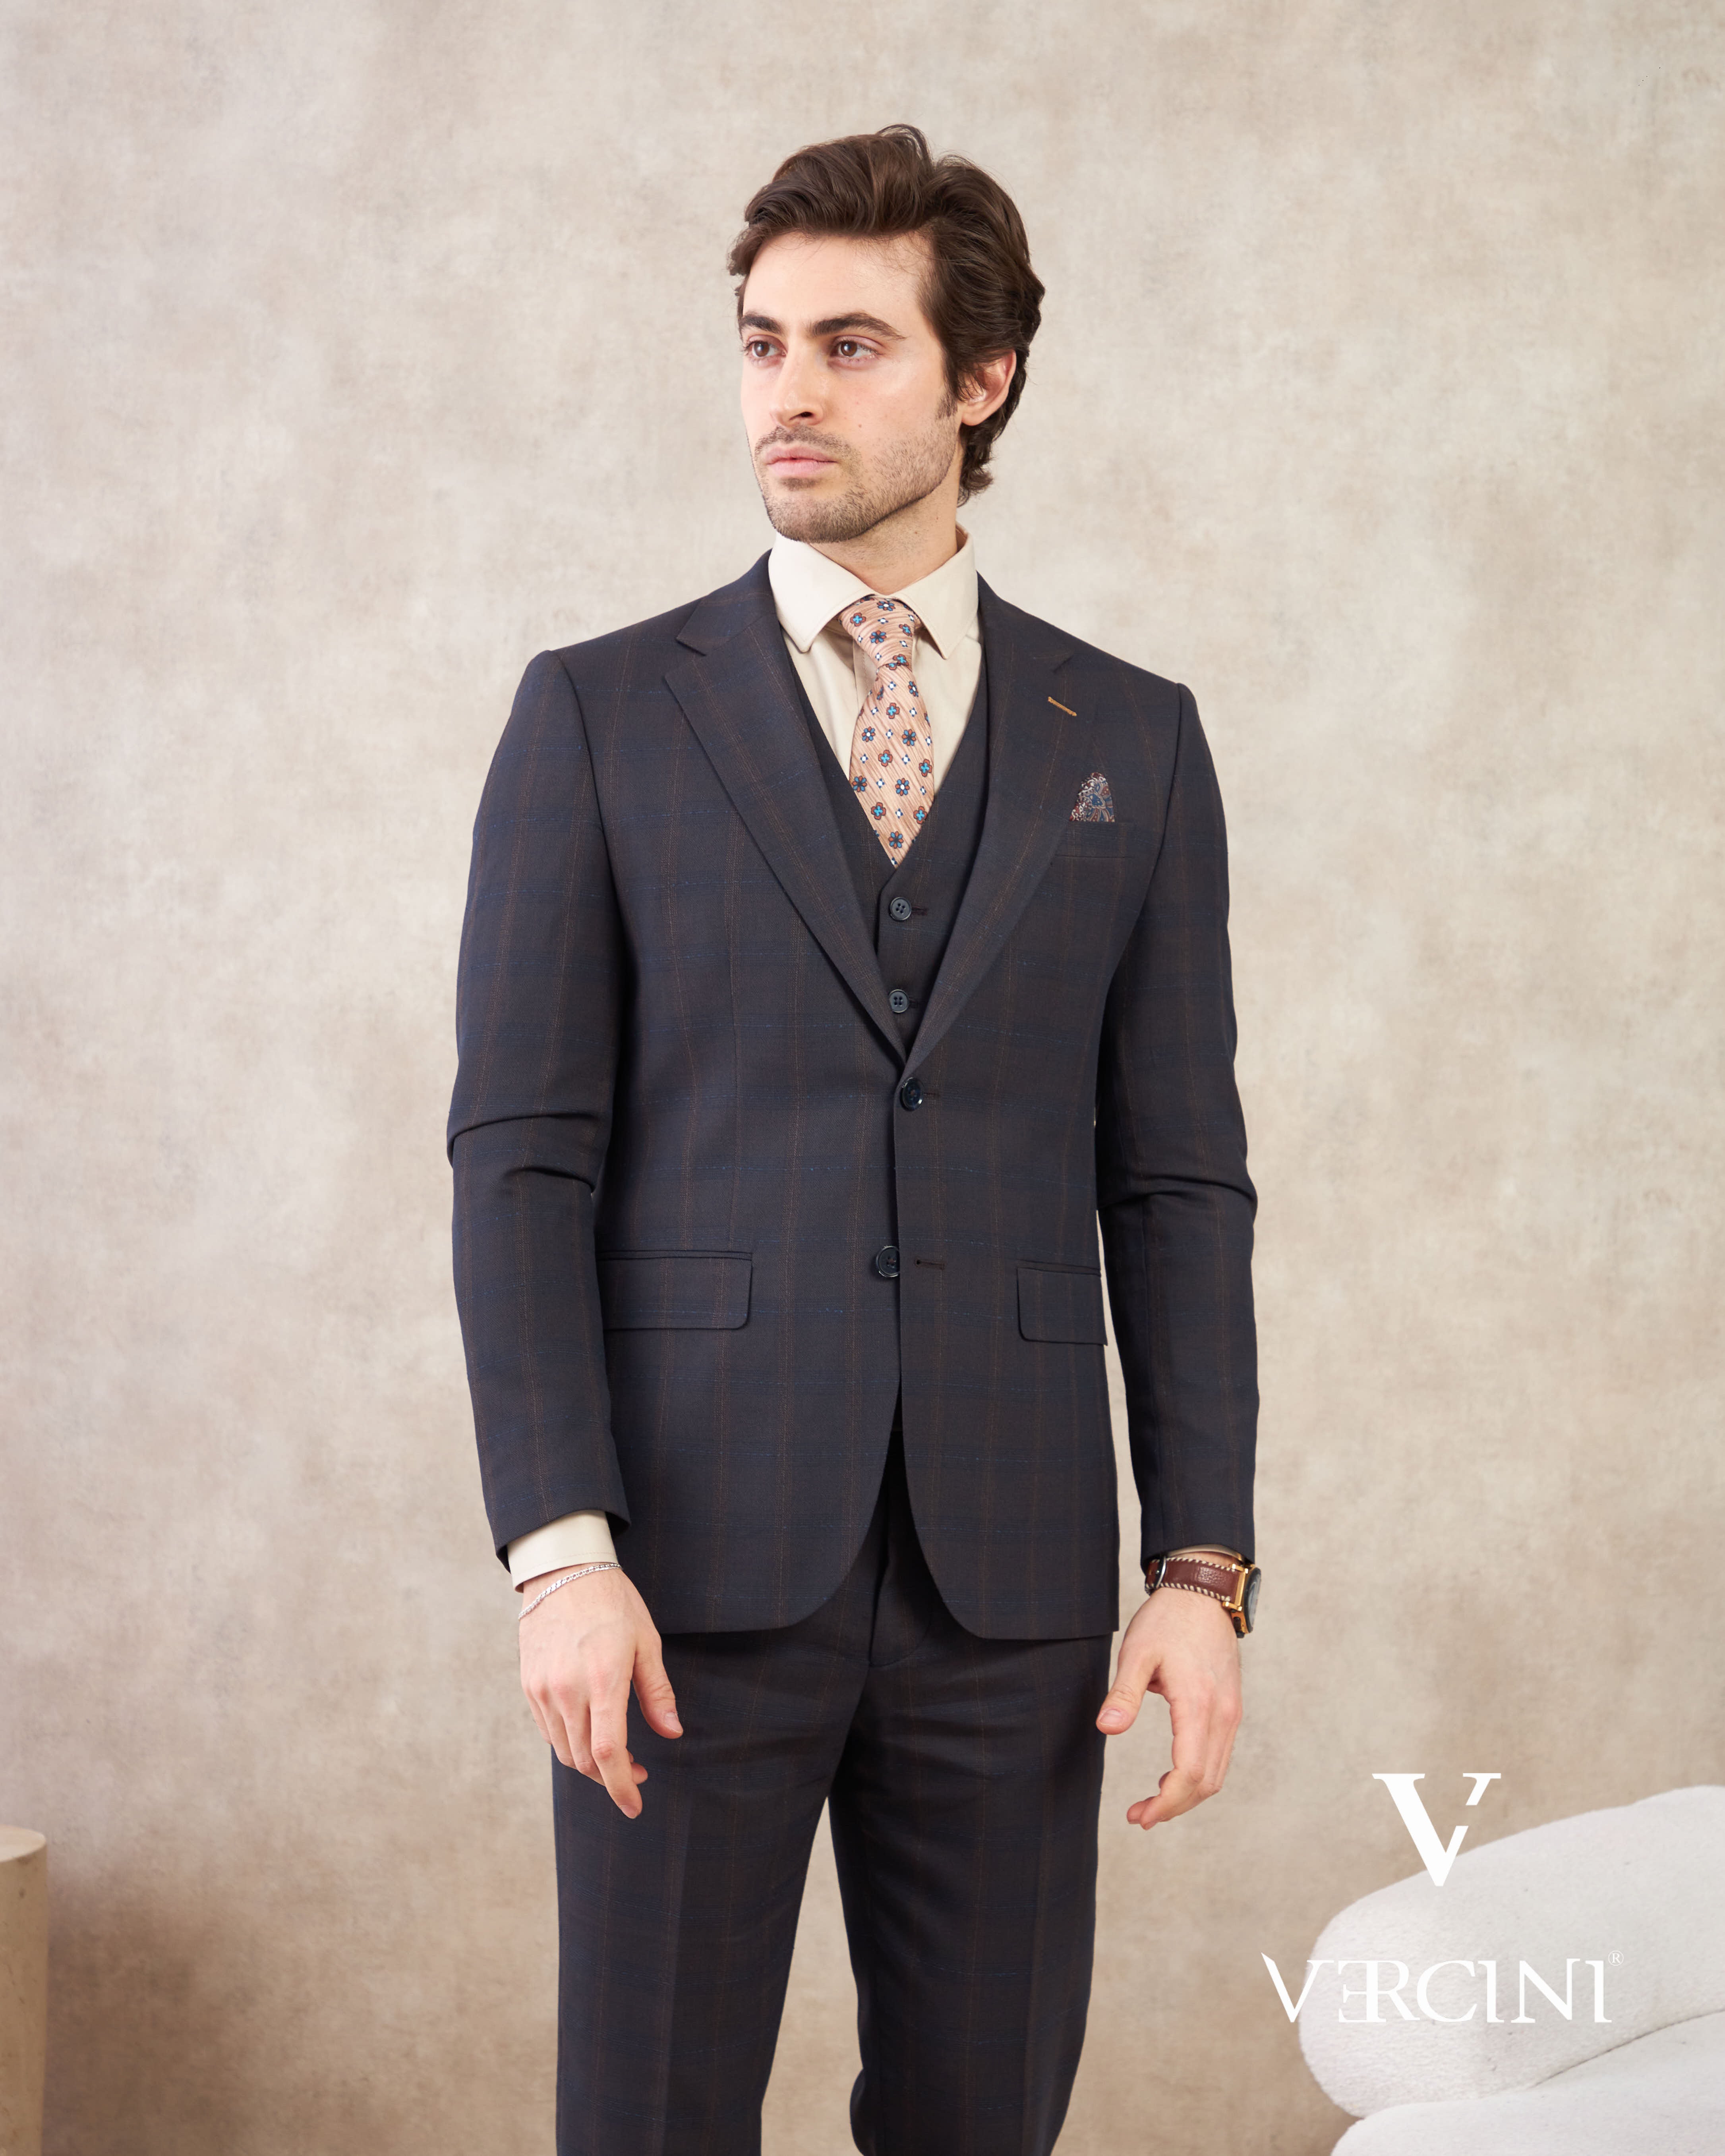 Vercini Regal Executive Three-Piece Men's Suit